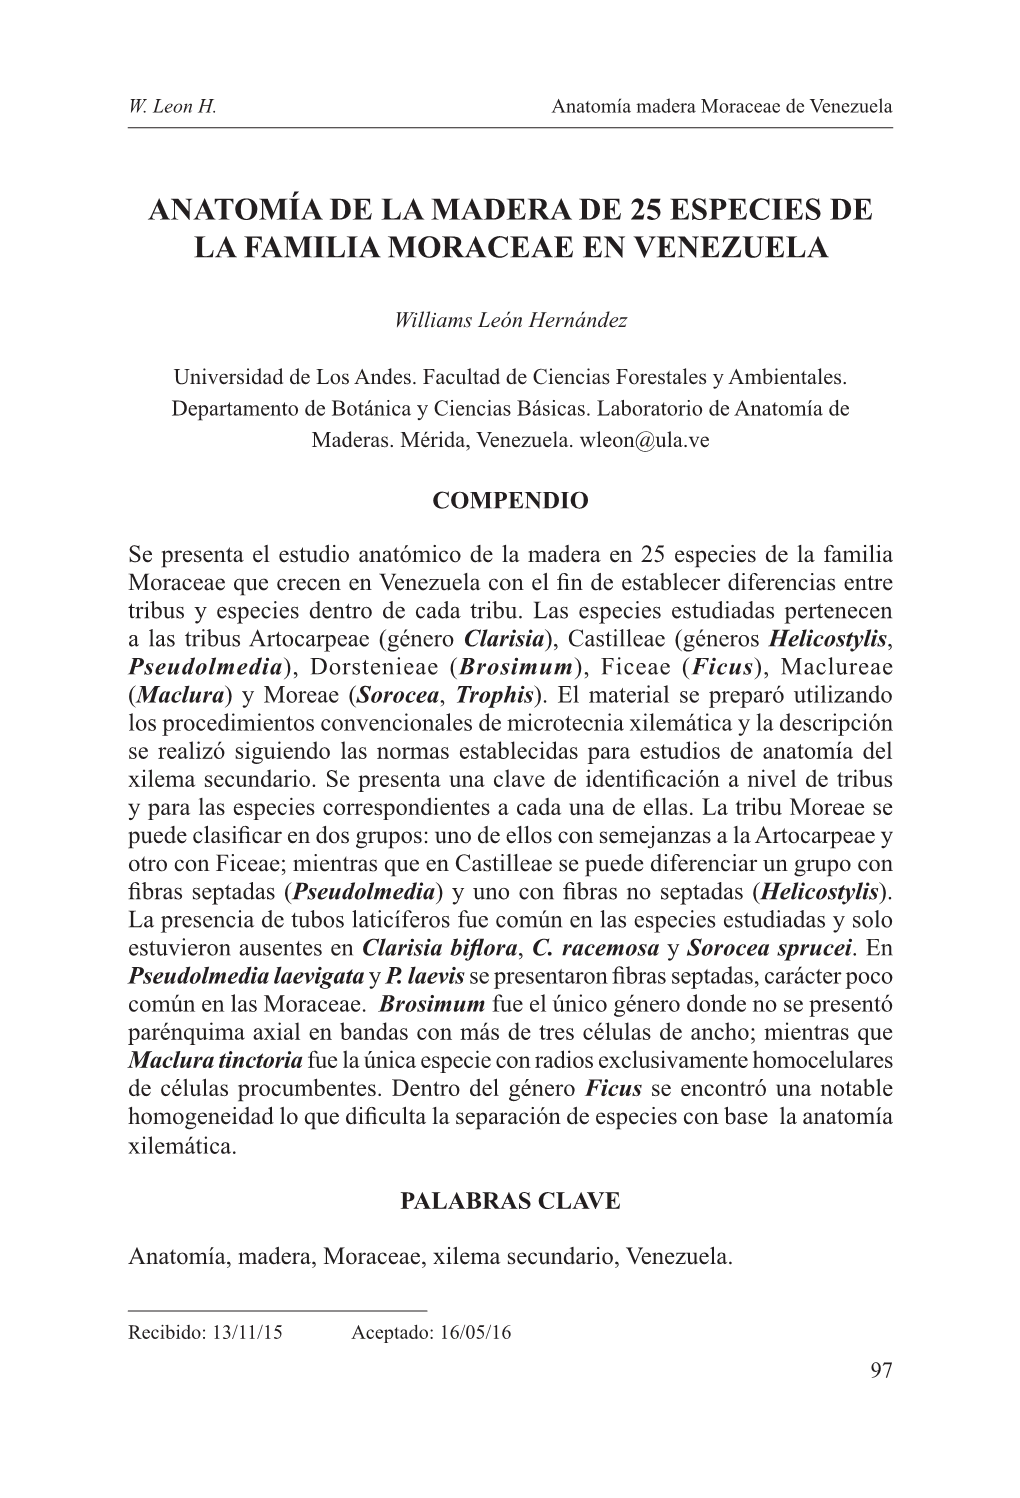 Anatomía De La Madera De 25 Especies De La Familia Moraceae En Venezuela